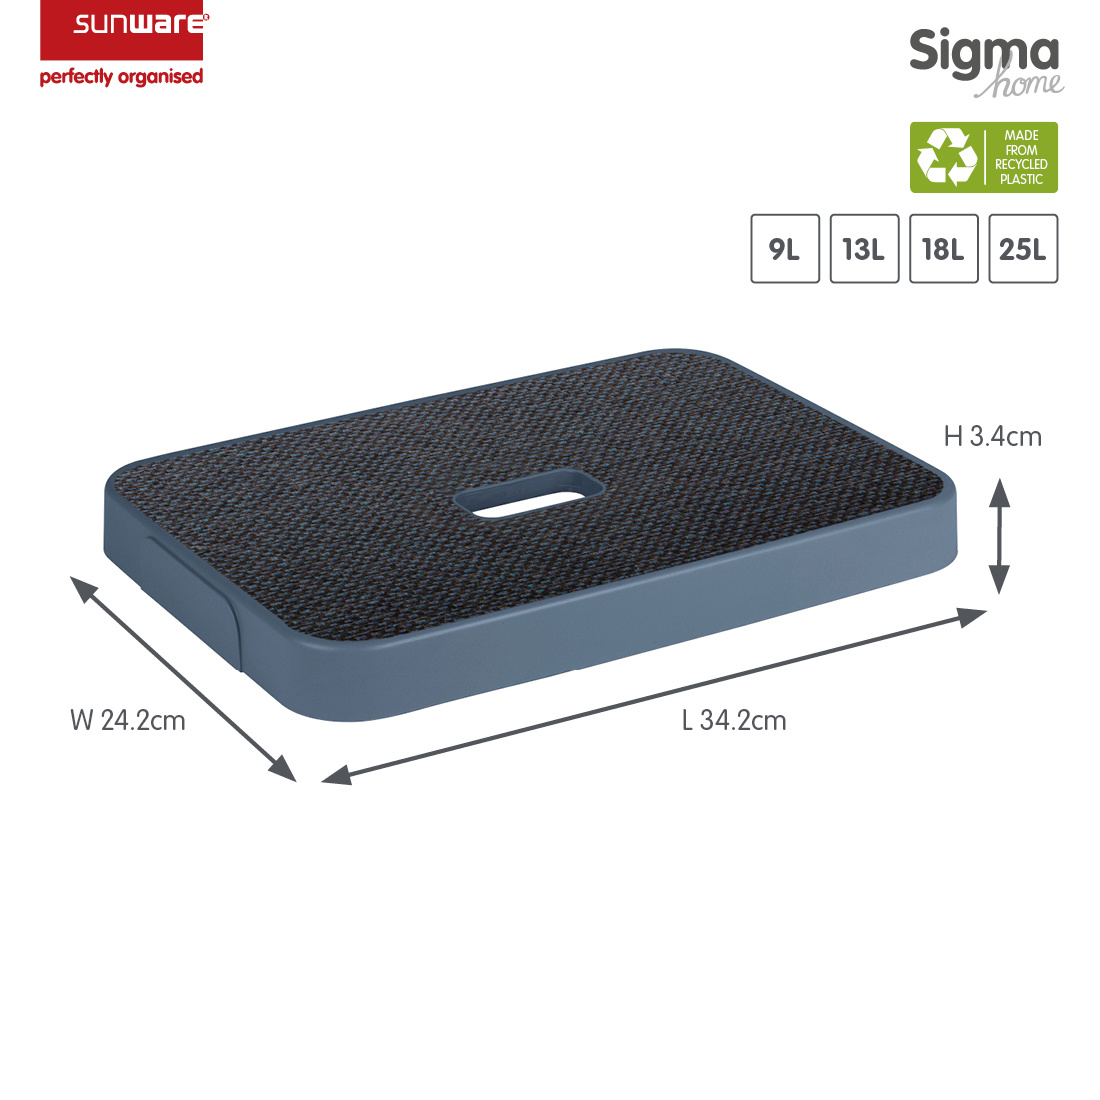 Sigma home Deckel Stoff blau für Aufbewahrungsbox 9L, 13L, 18L und 25L